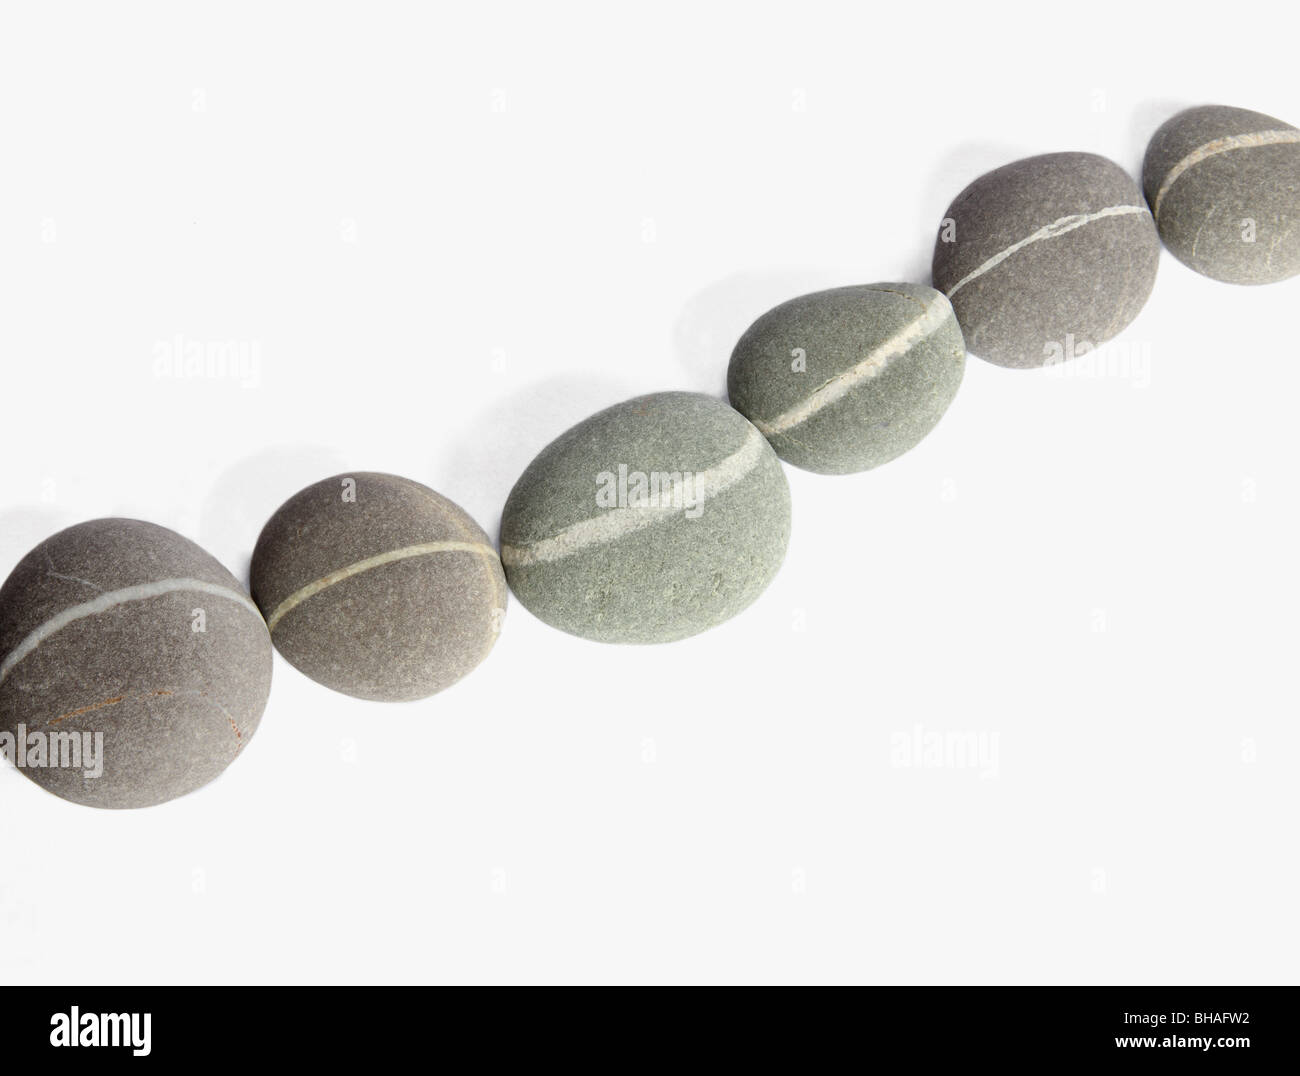 Cadena de seis guijarros creado con piedras de granito conectando una veta de cuarzo blanco en cada piedra para formar una línea continua. Foto de stock